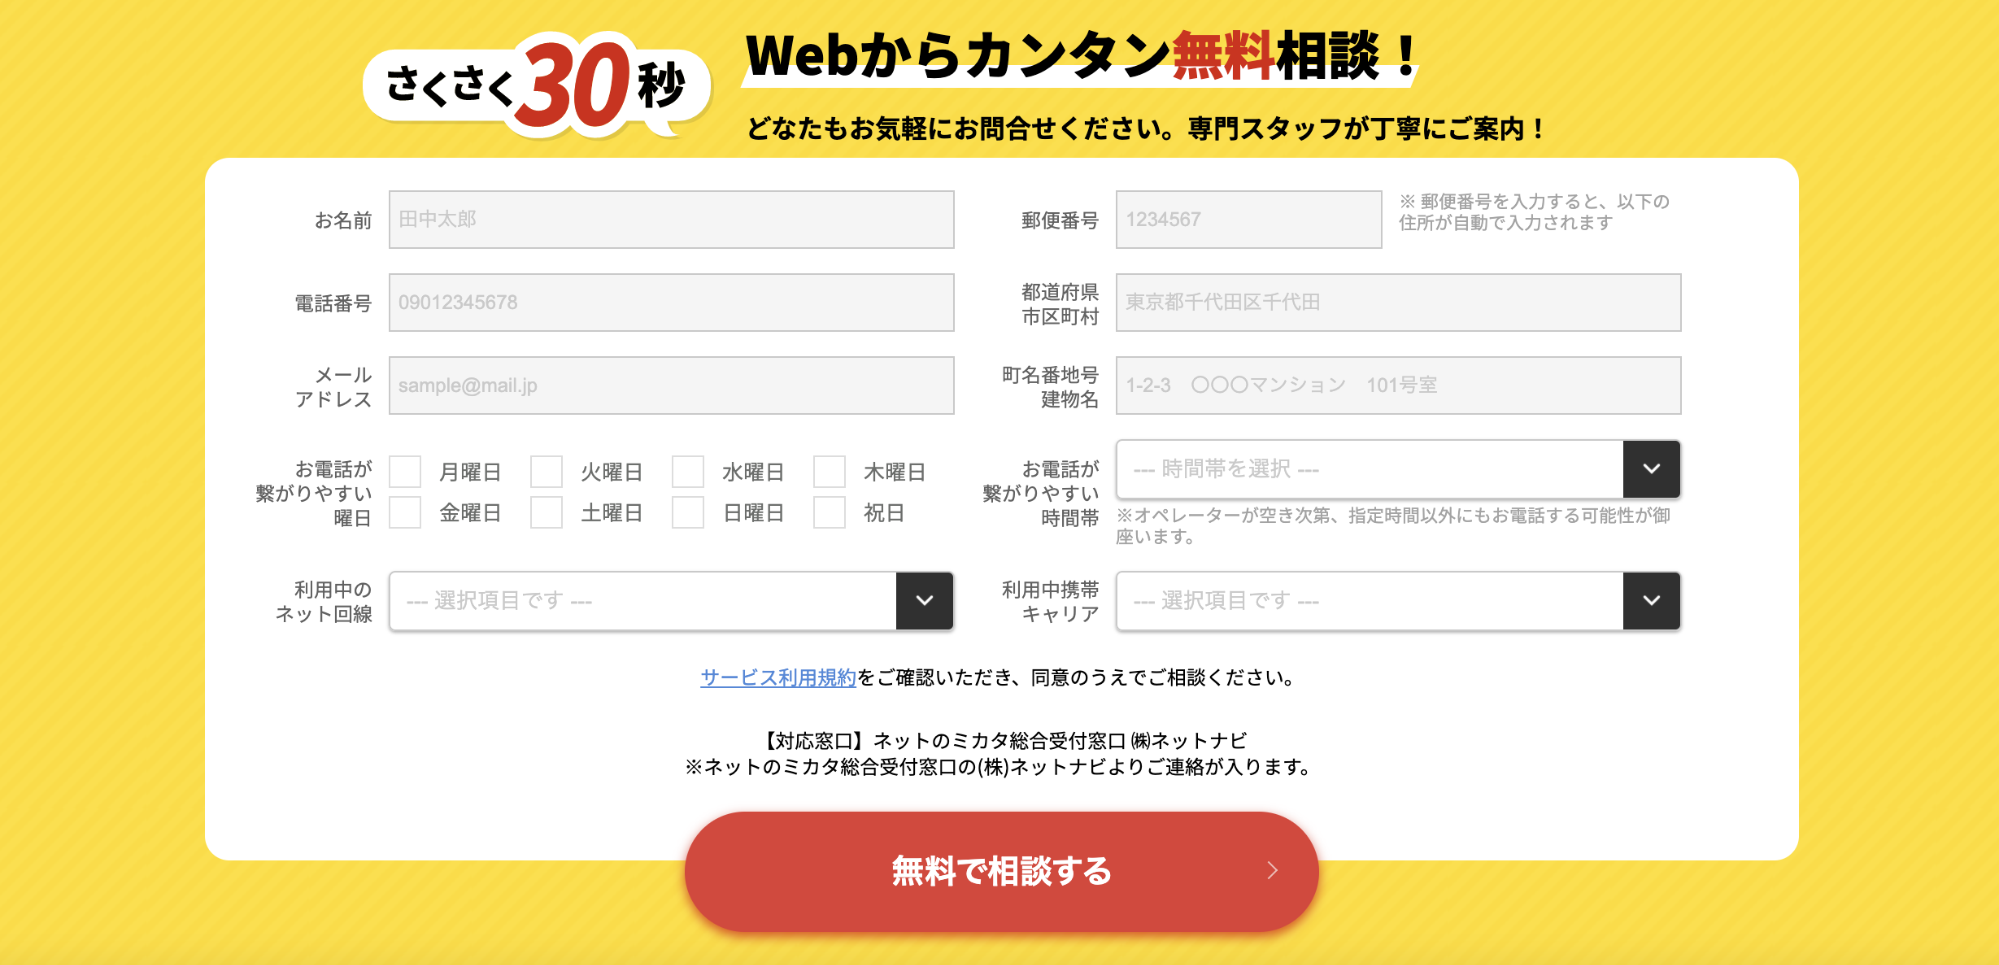 ネットのミカタ。のWebフォーム画面